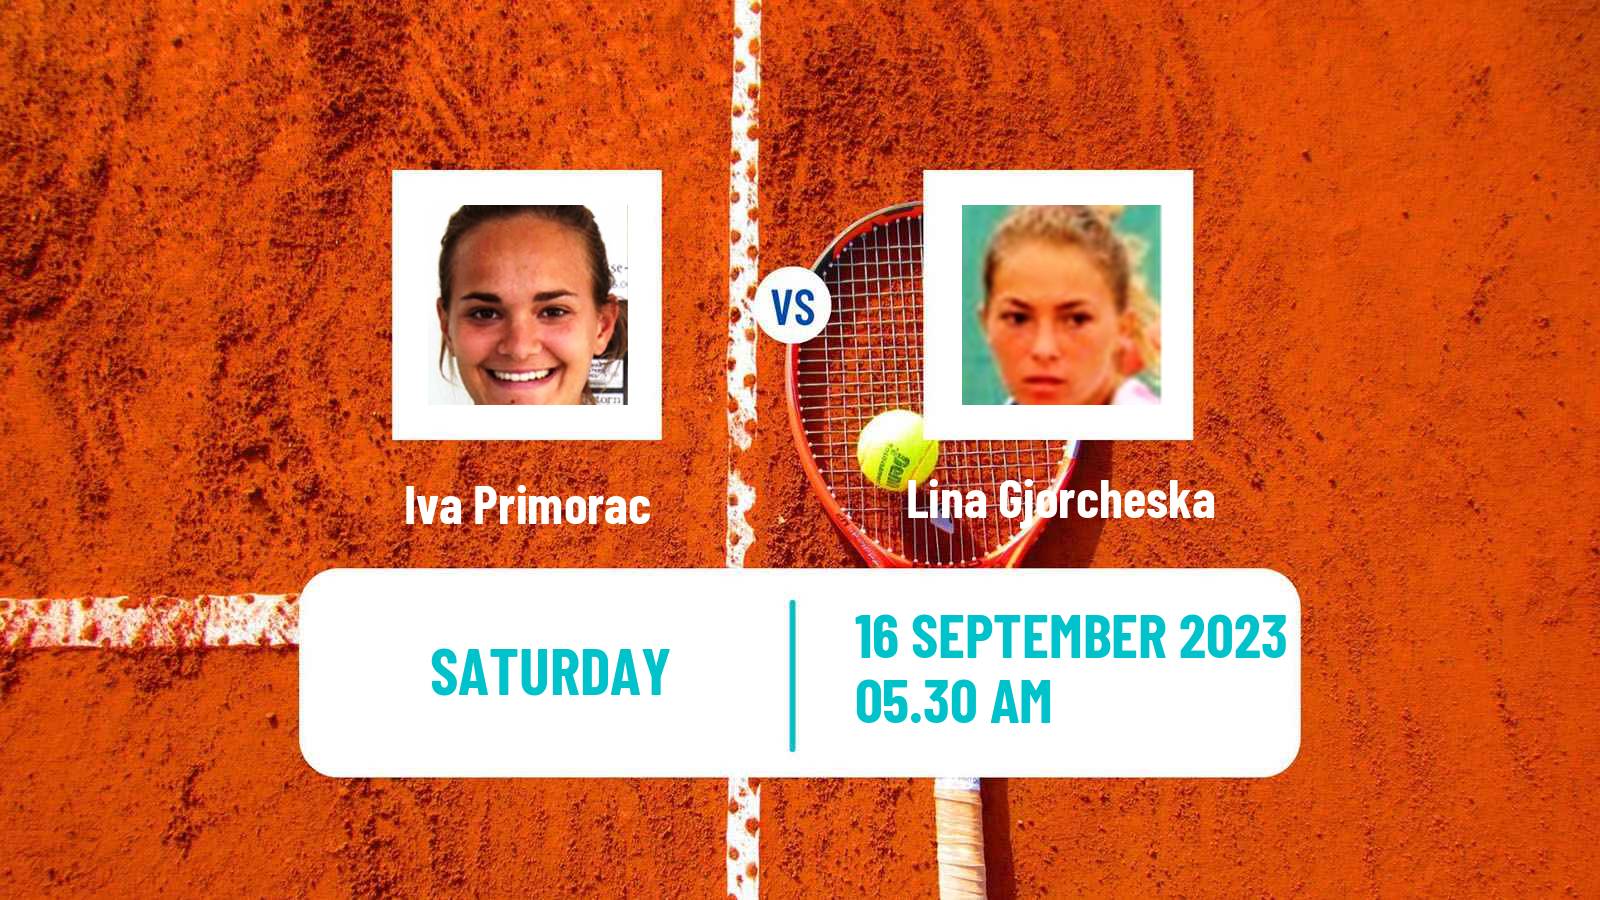 Tennis ITF W40 Skopje Women Iva Primorac - Lina Gjorcheska